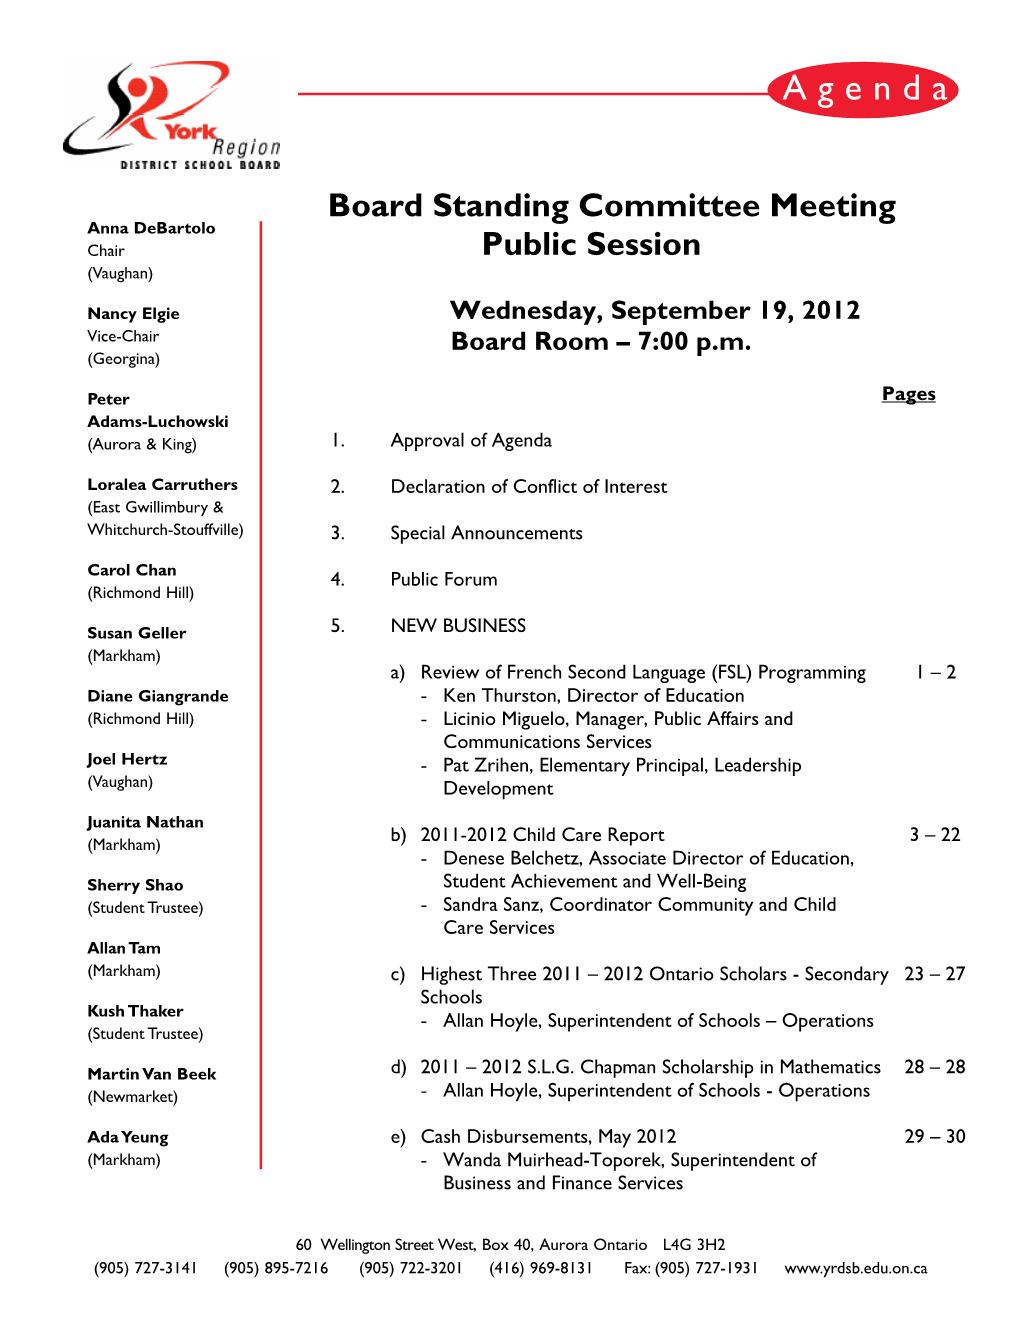 Wednesday, September 19, 2012 Board Room – 7:00 Pm